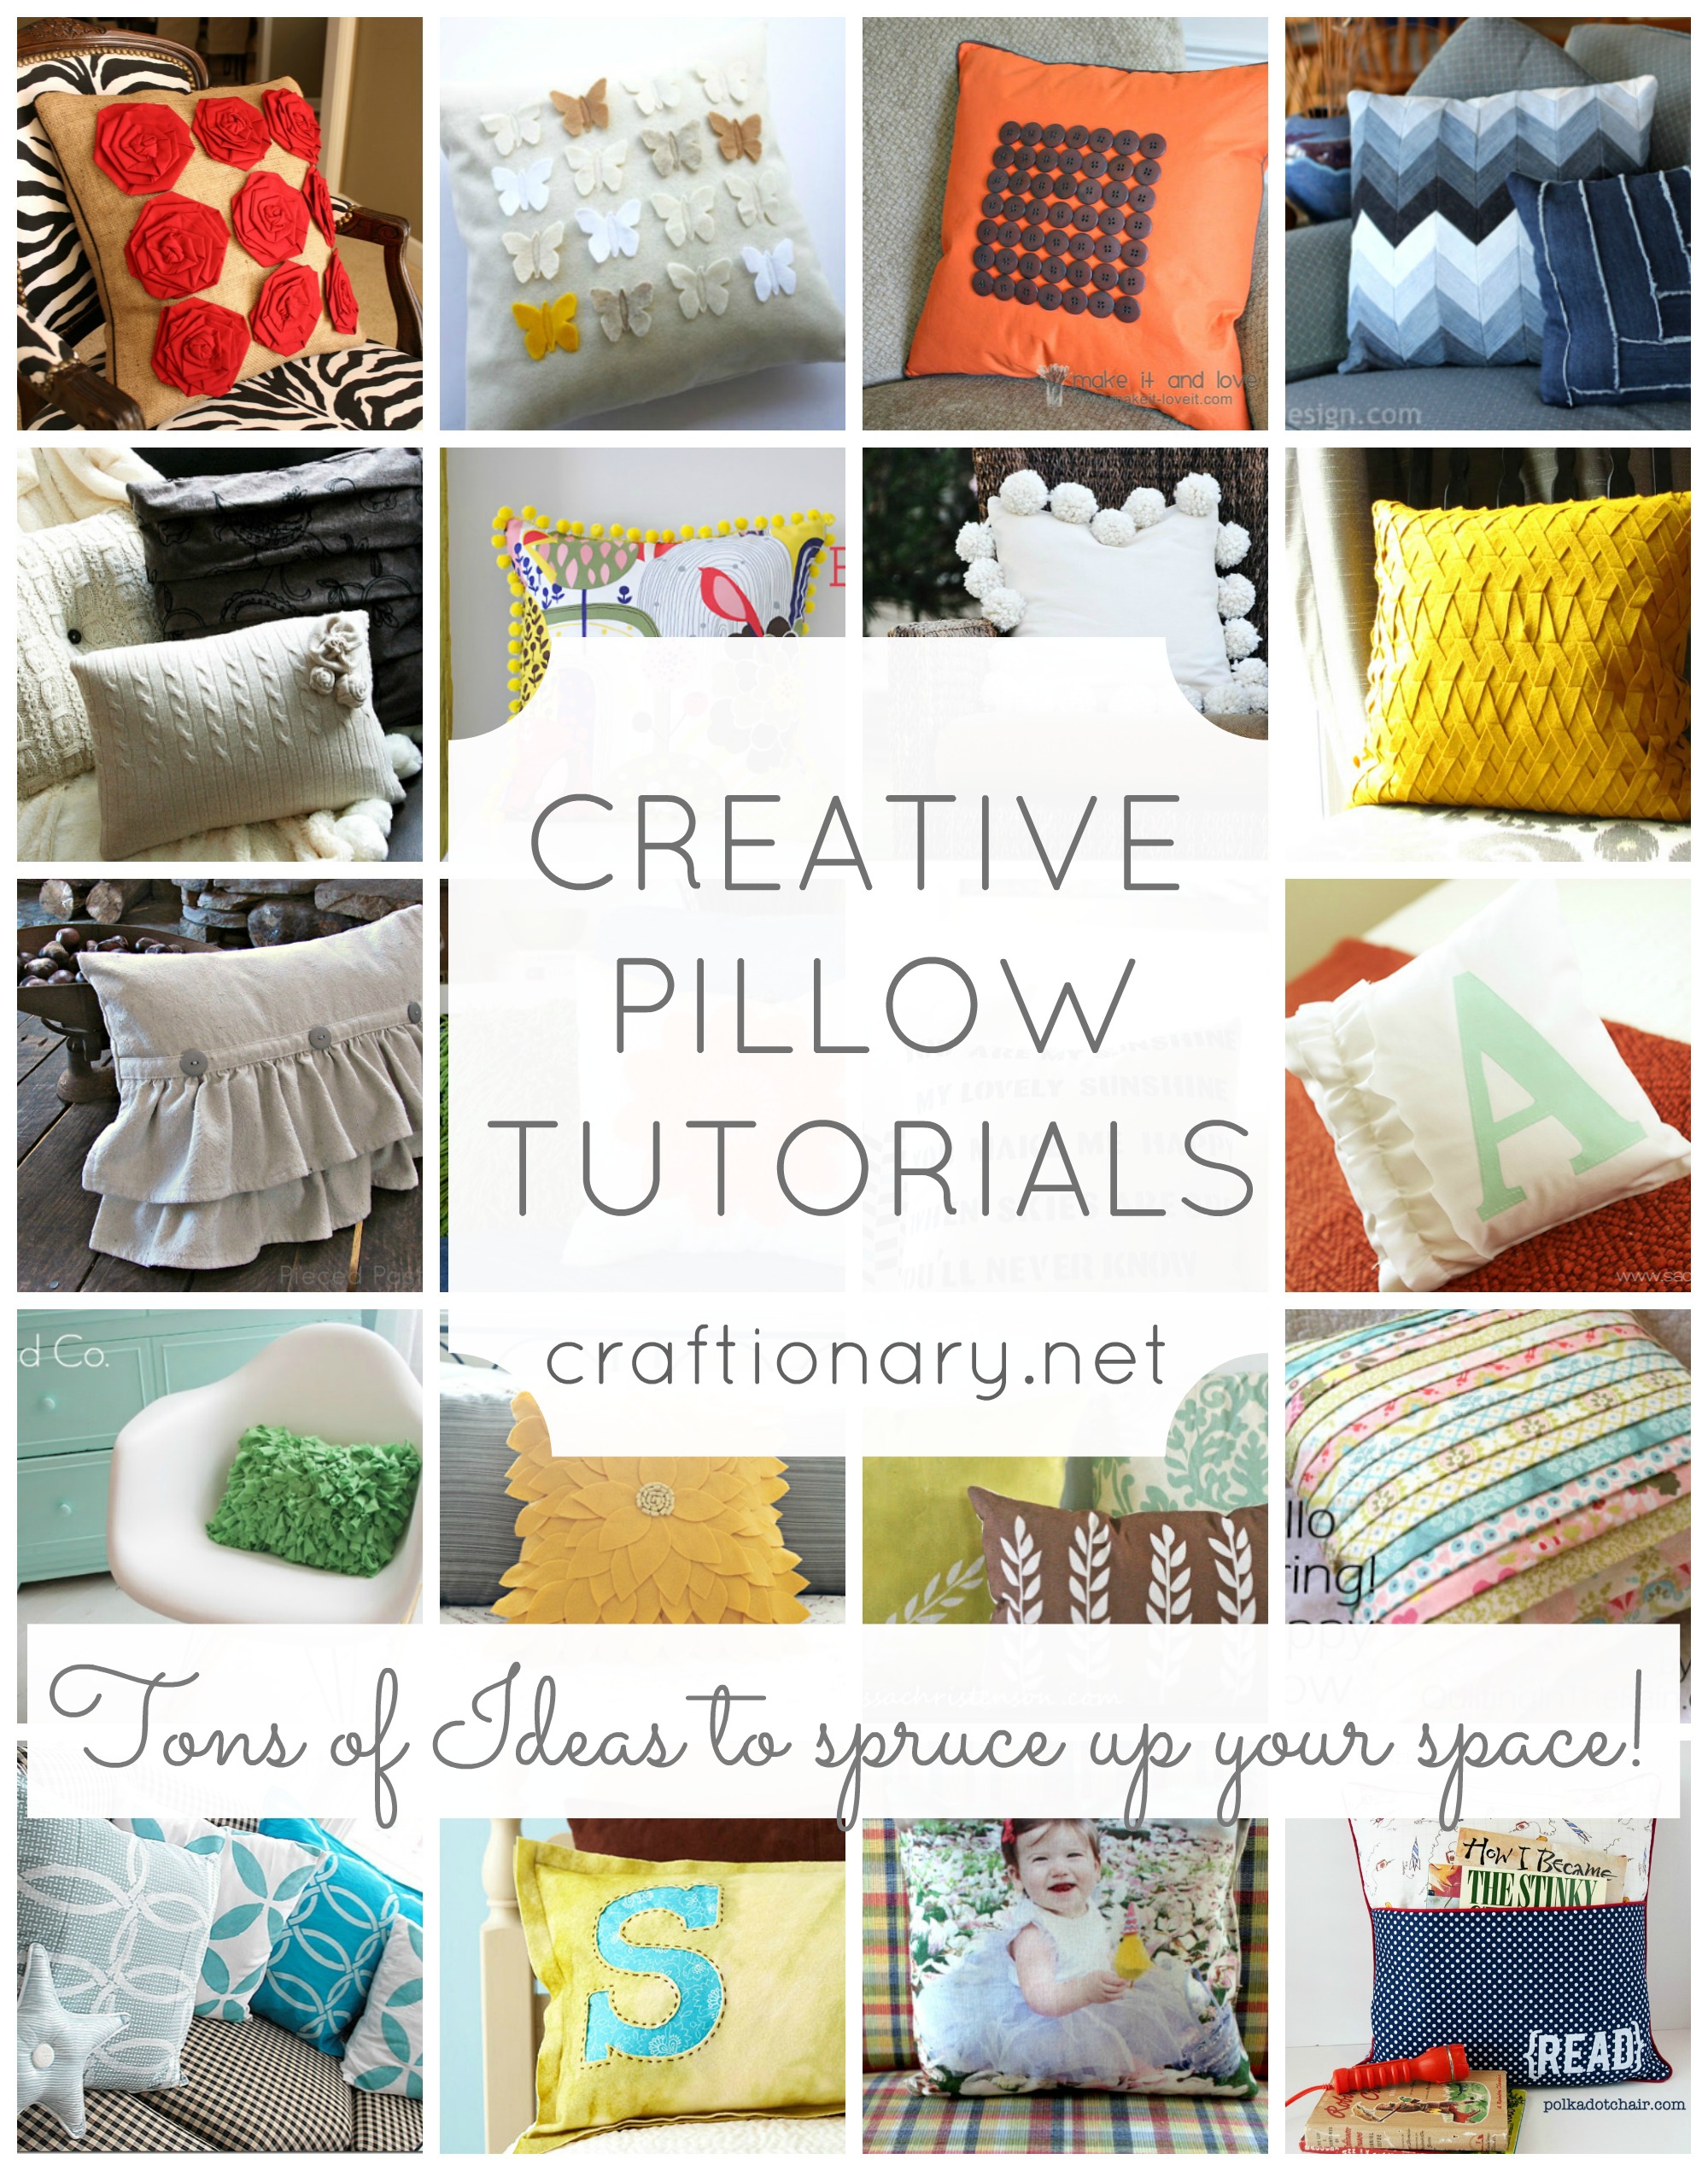 https://www.craftionary.net/wp-content/uploads/2013/03/decorative-pillow-tutorials.jpg